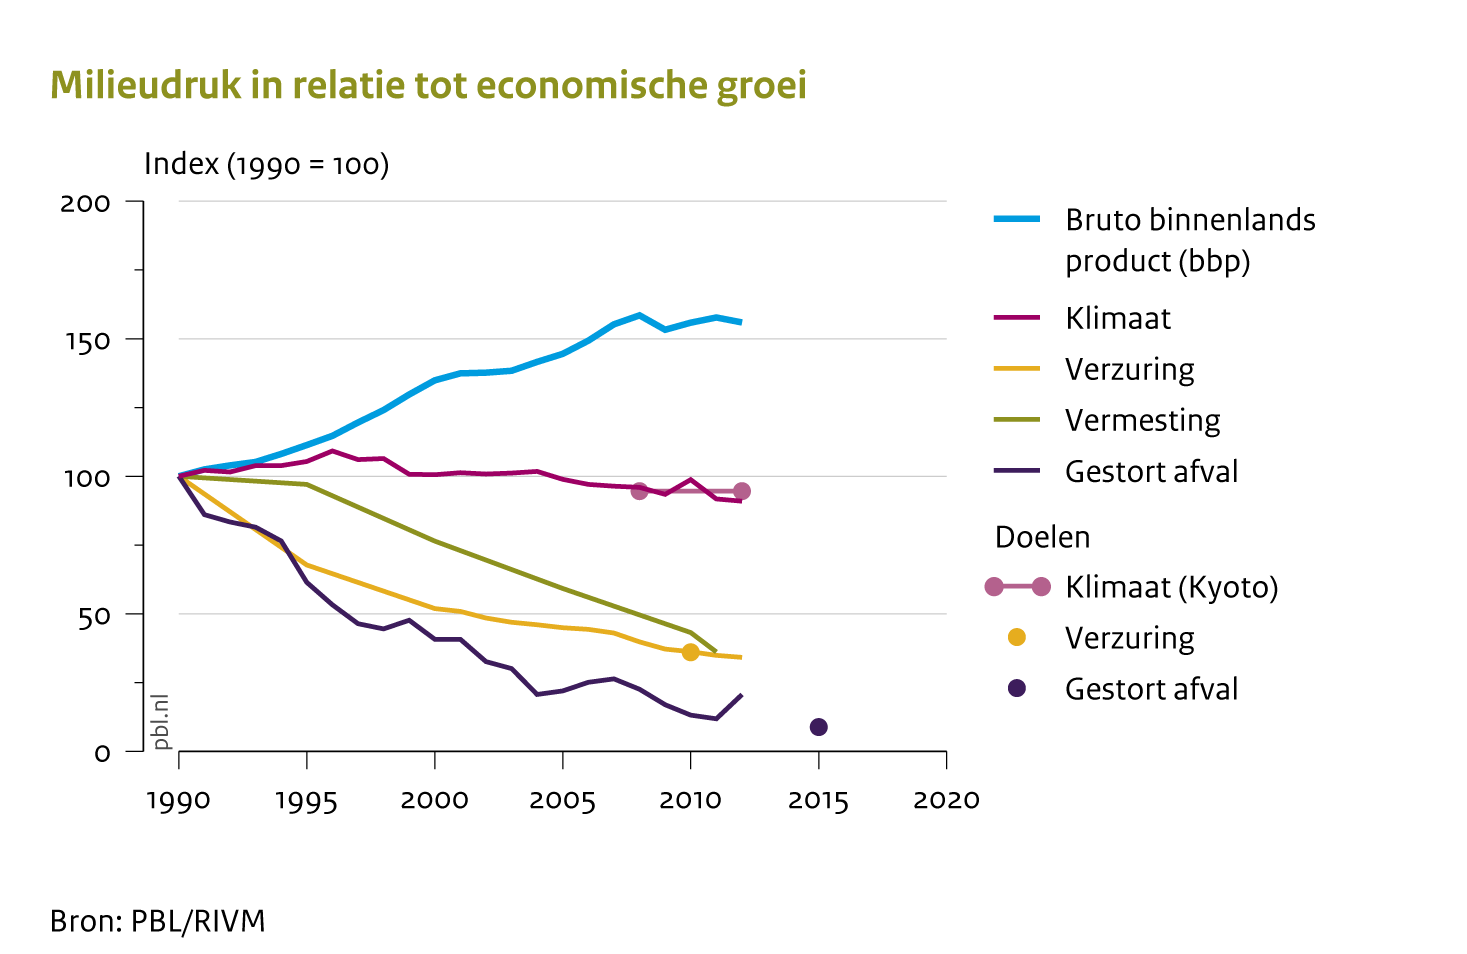 De milieudruk in Nederland is de laatste decennia steeds verder afgenomen, terwijl de economie groeide. Het beleid heeft hier een belangrijke bijdrage aan geleverd.